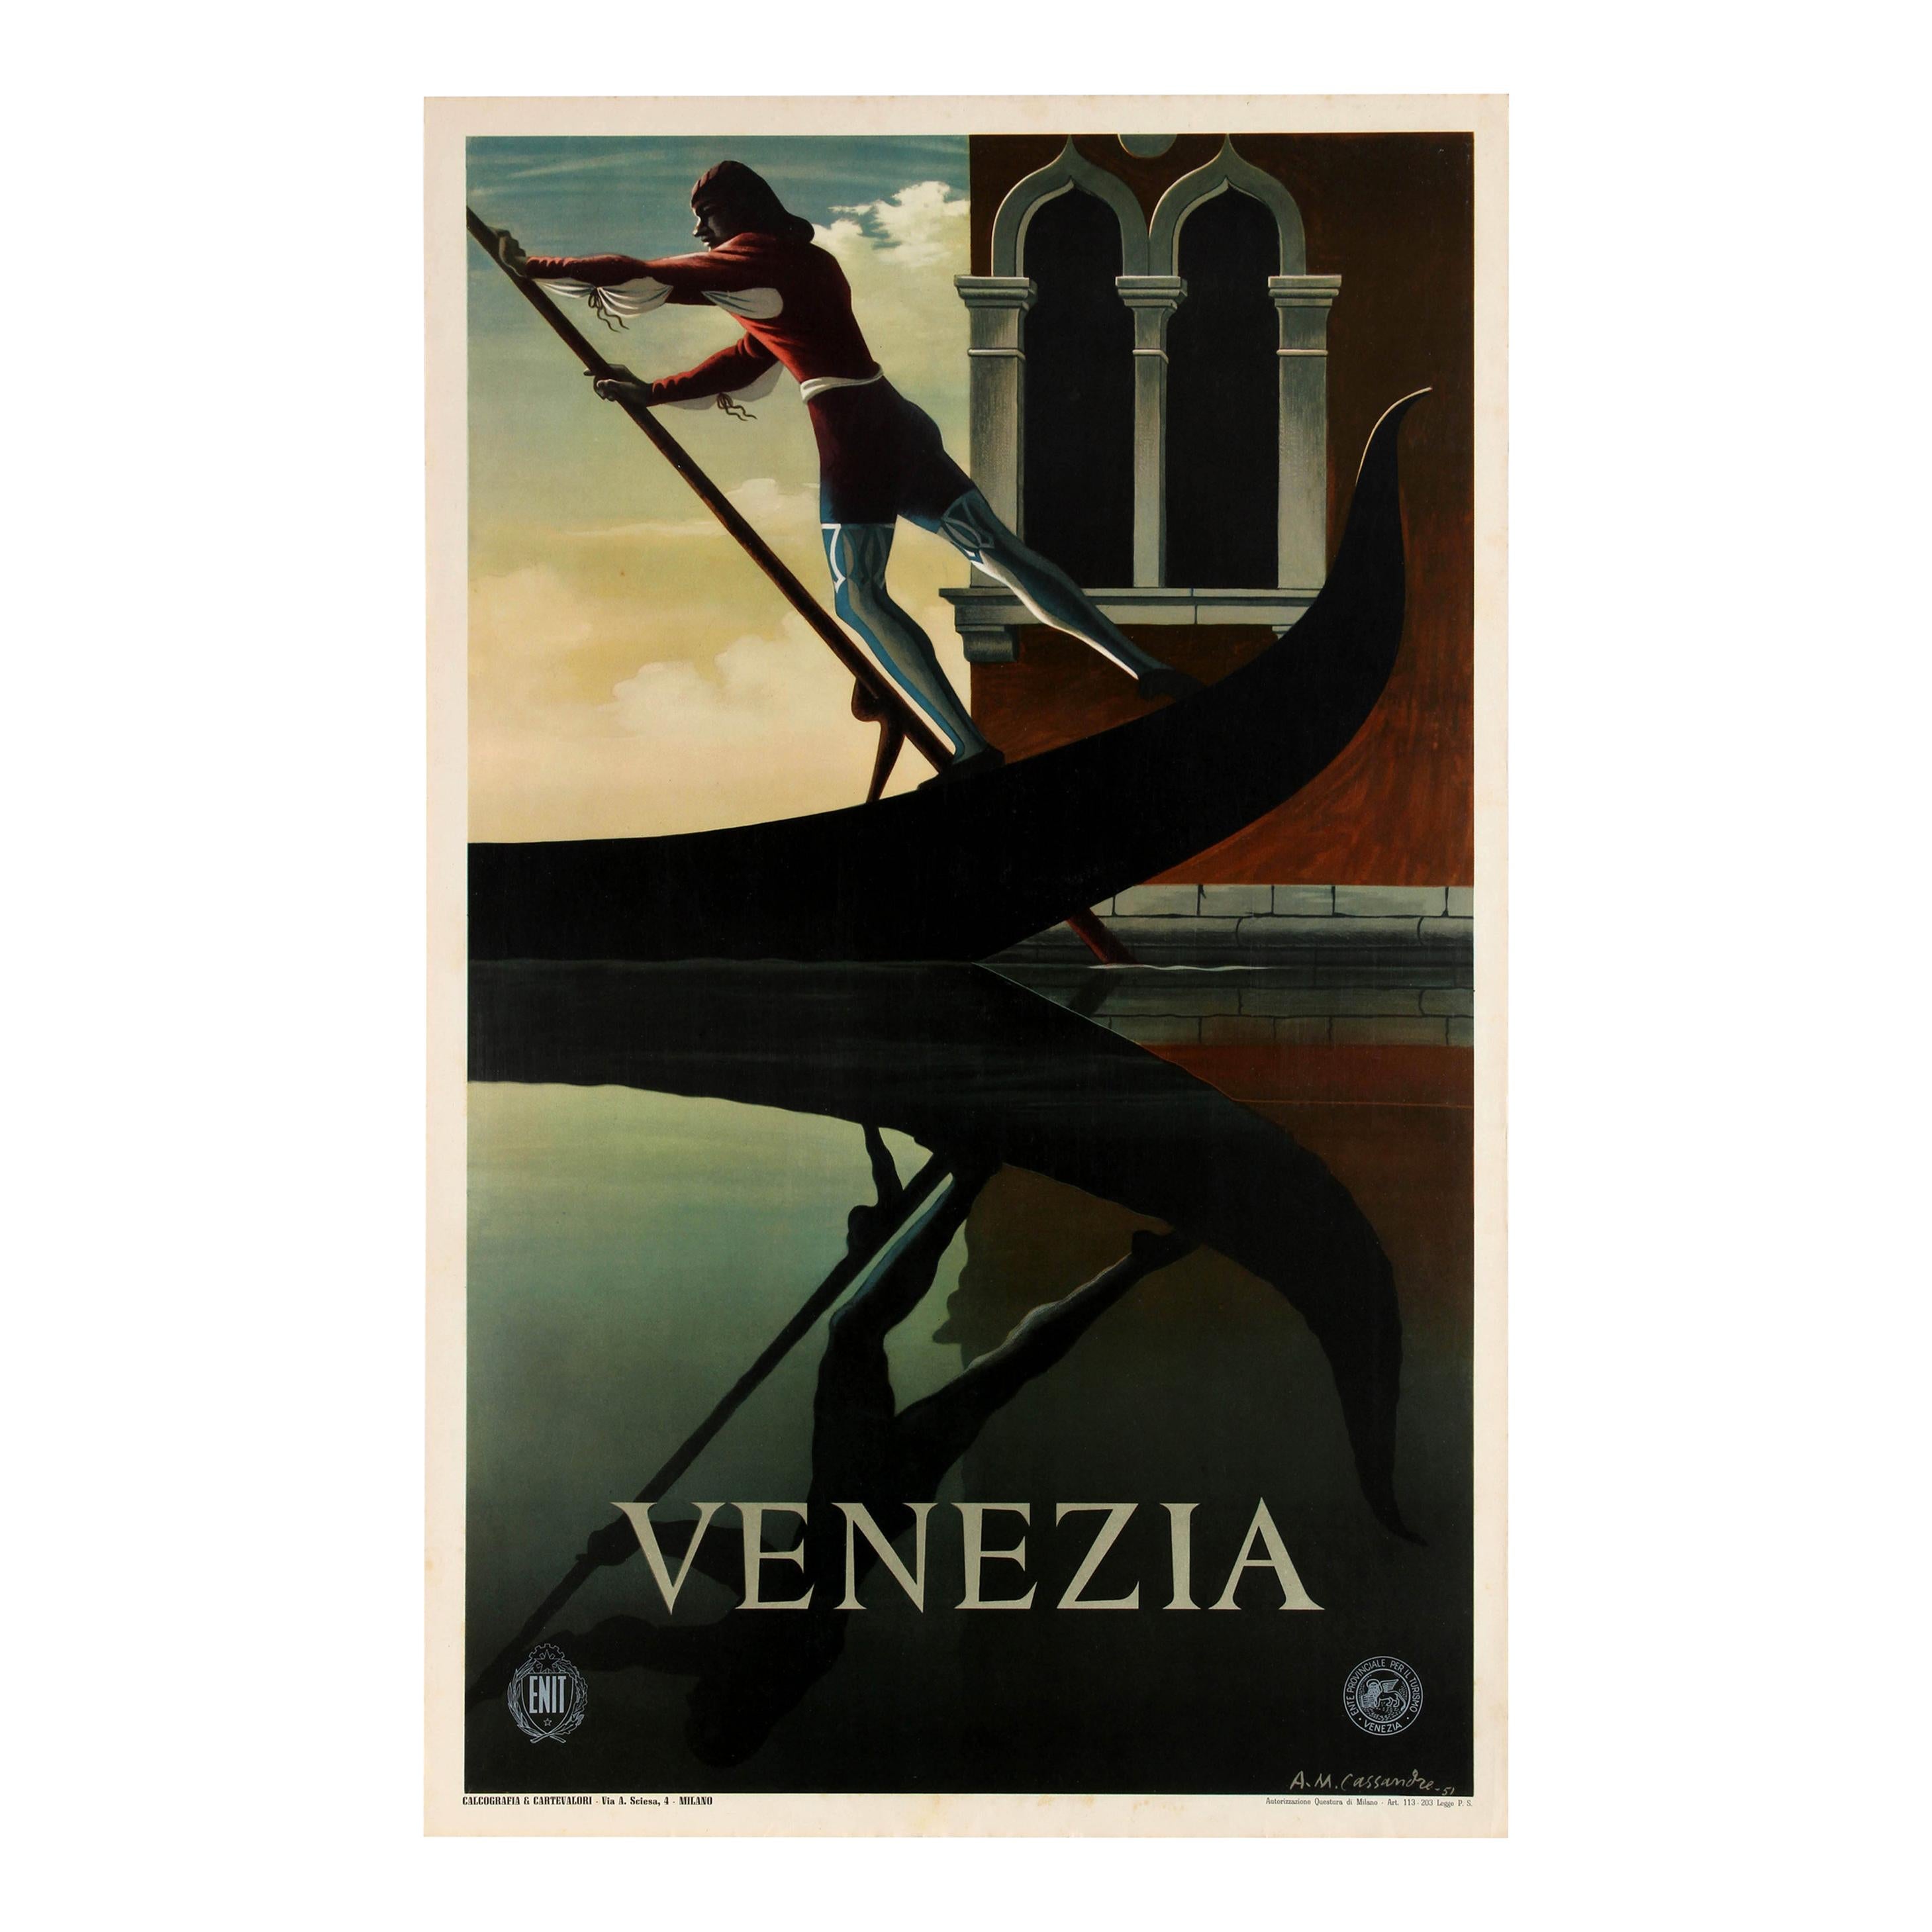 Original Vintage Iconic ENIT Travel Poster by Cassandre Venice Venezia Gondola